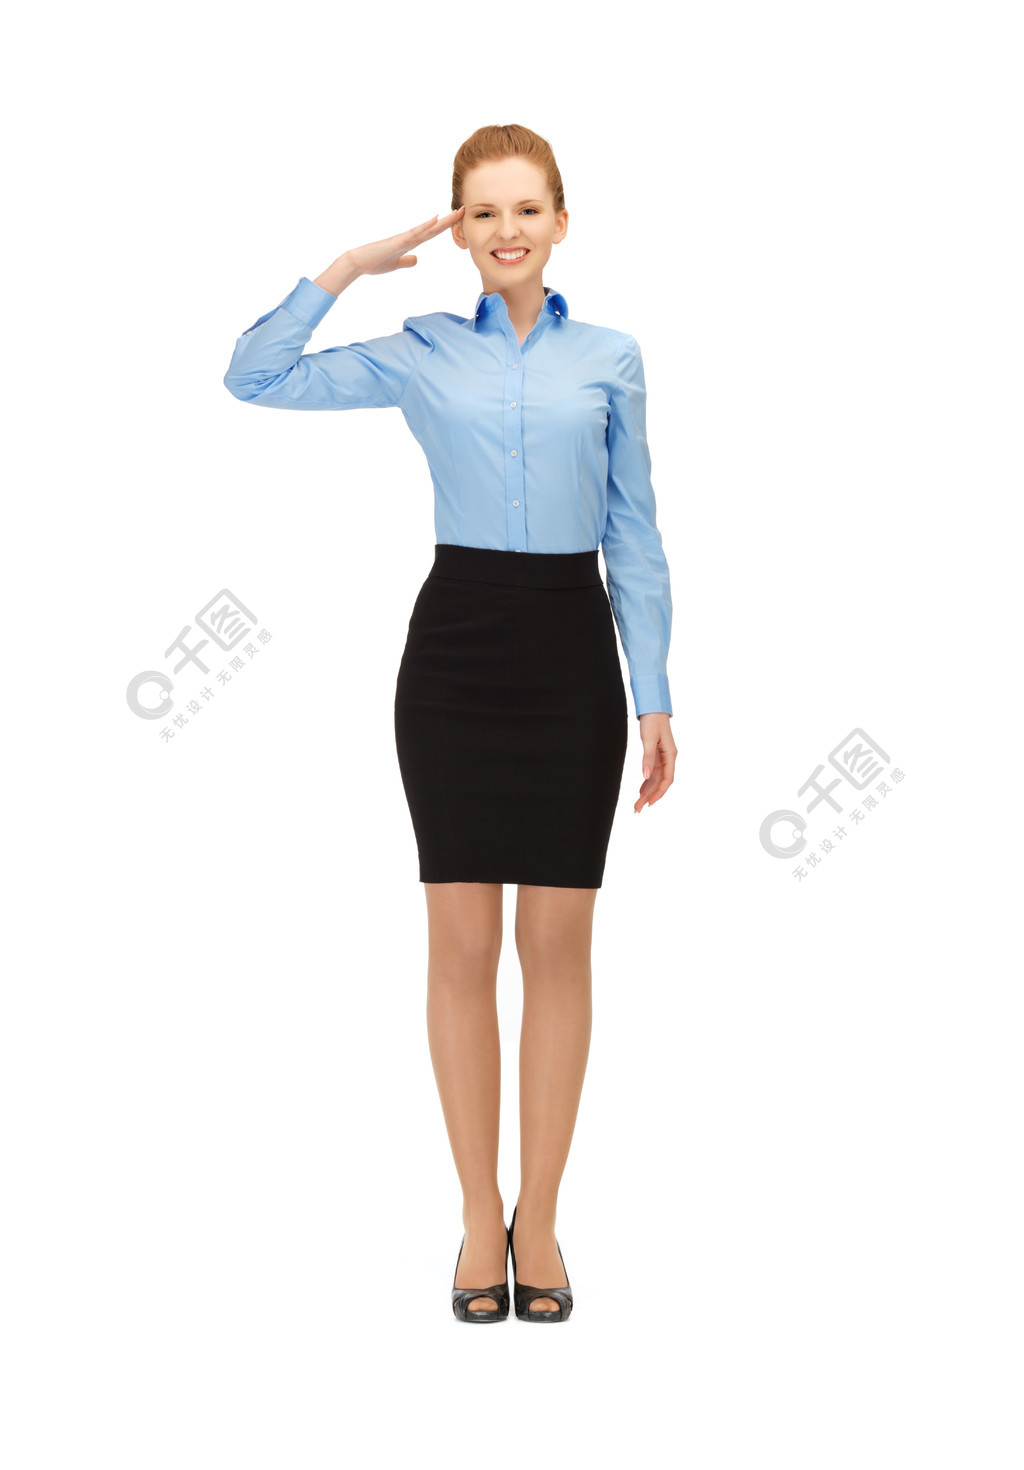 快乐和微笑的空姐做敬礼的手势